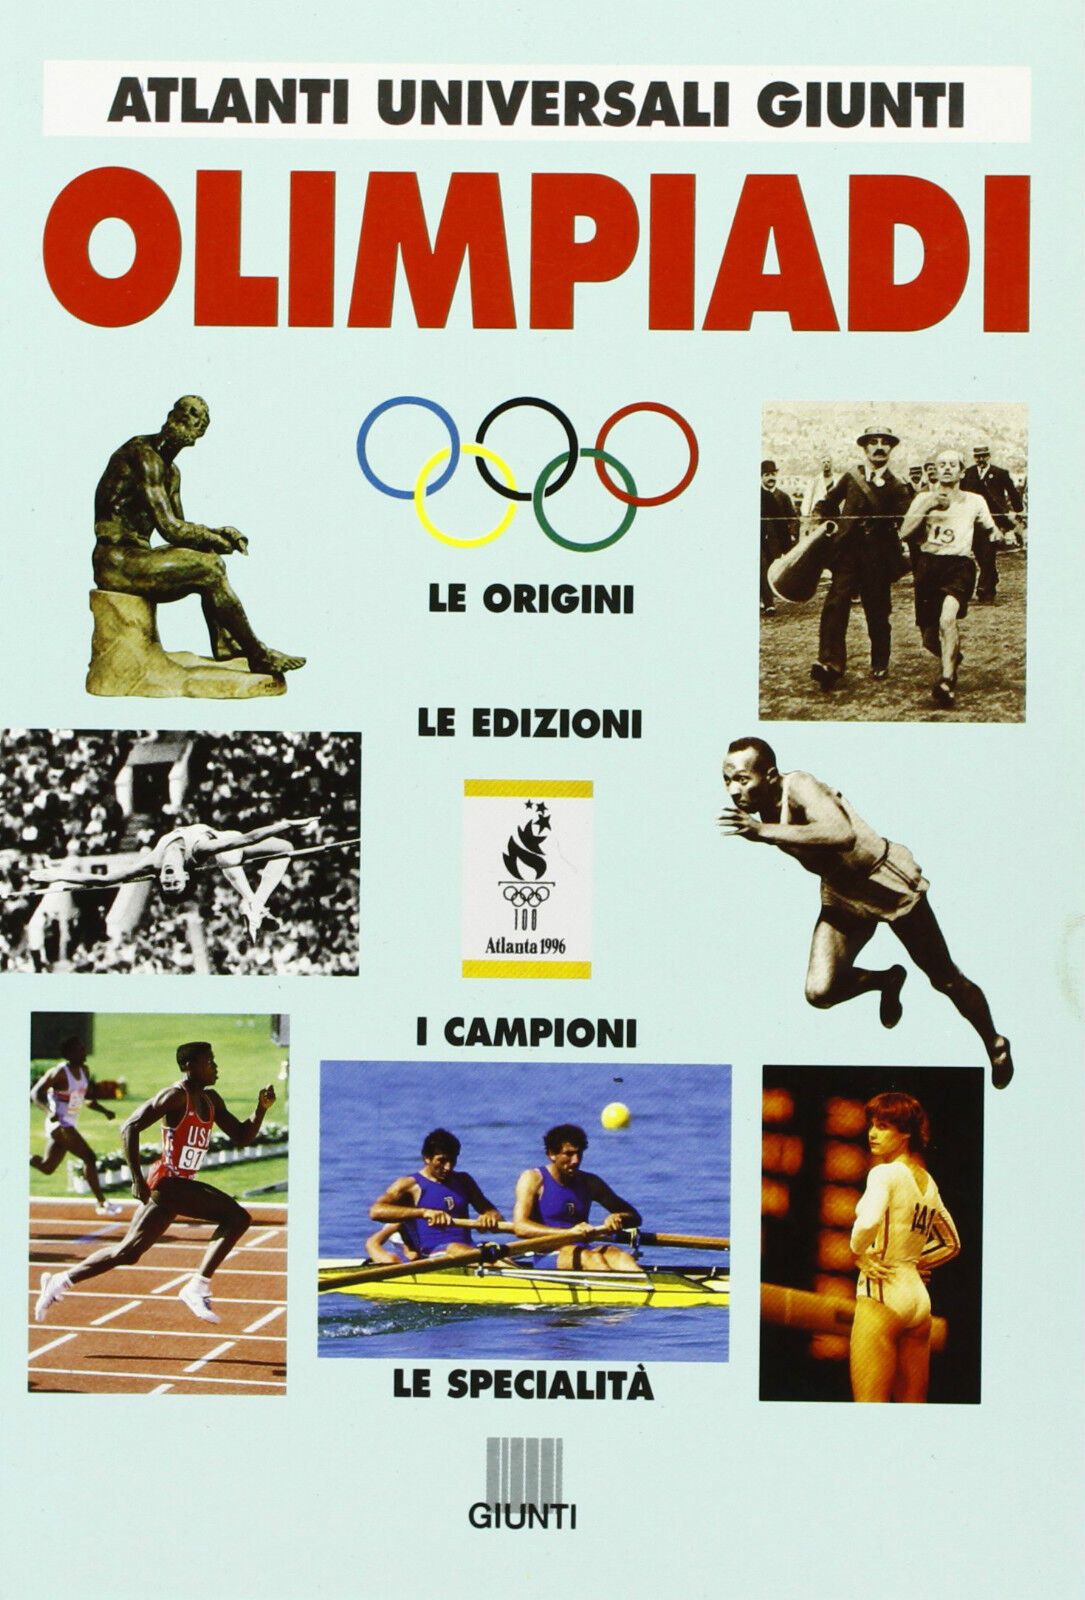 Olimpiadi - Chiari Riccardo - Giunti Editore - 1996 - G